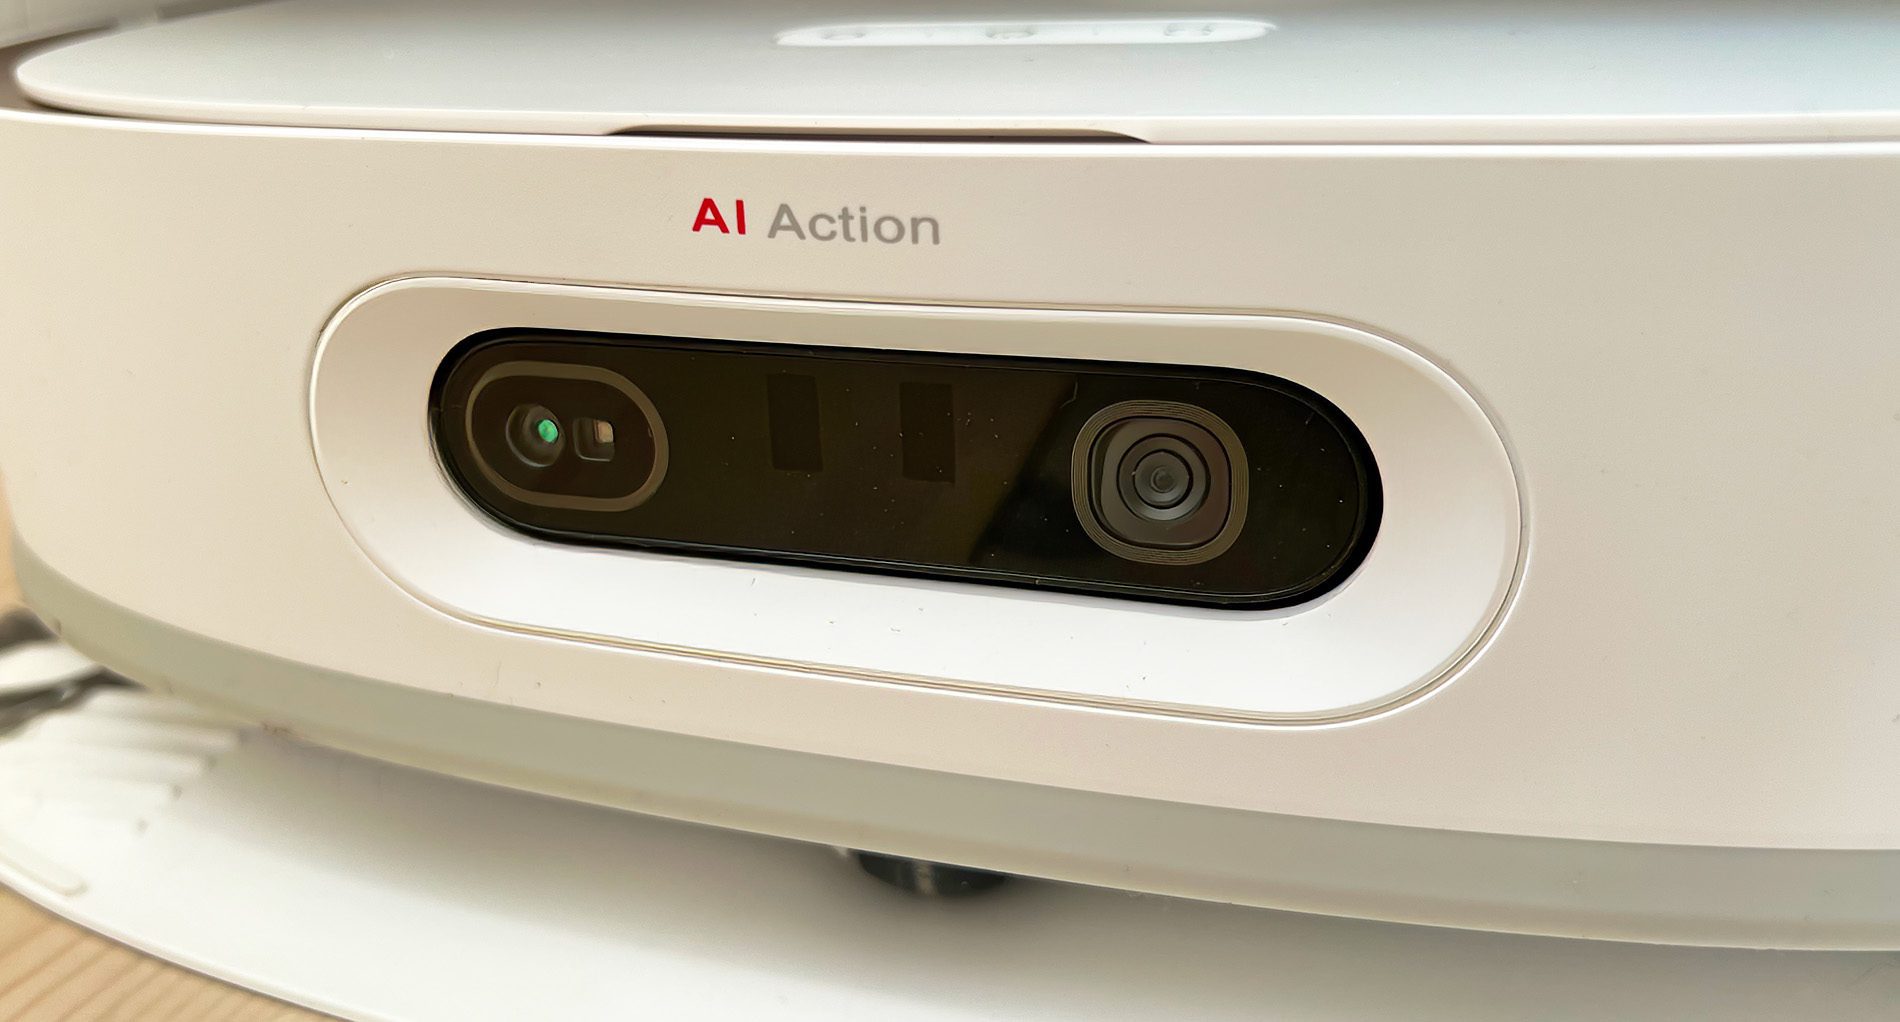 Der Dreame W10 Pro verfügt über zwei Kameras und Sensoren auf der Vorderseite, die das AI Action Feature – also das dreidimensionale Scannen und Erkennen von Objekten – möglich macht.